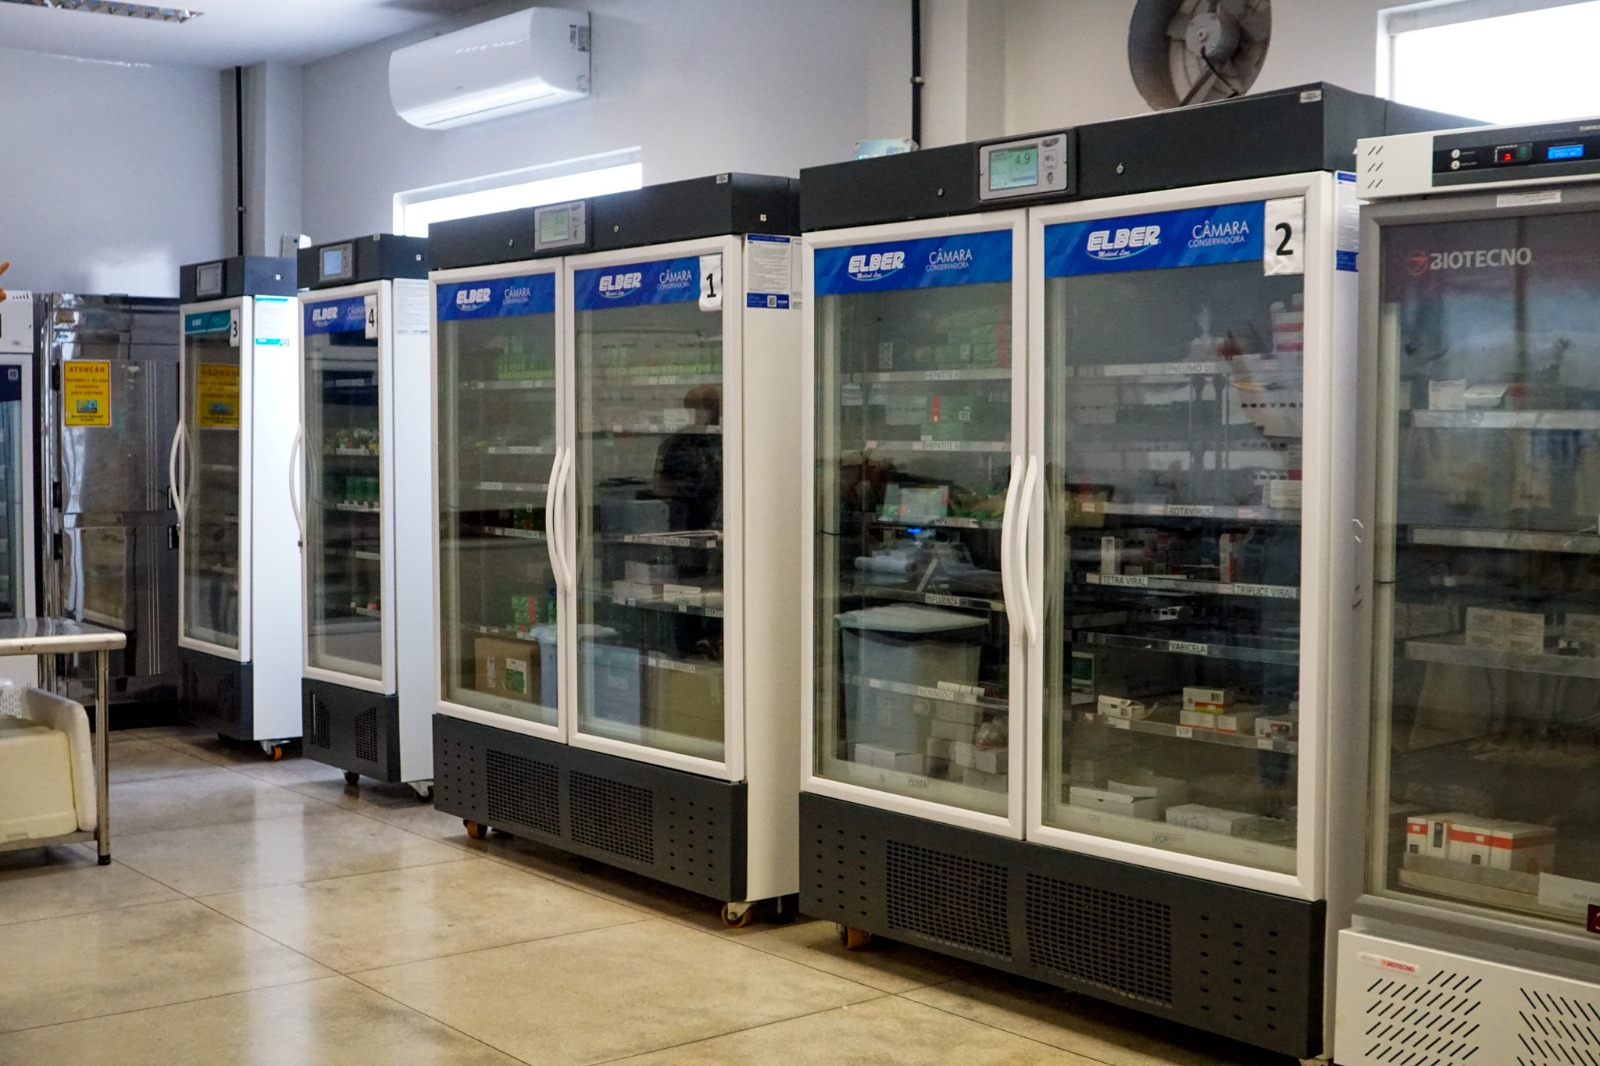 Se houver alguma instabilidade nos refrigeradores ou na energia elétrica, o sistema emite vários alertas aos servidores